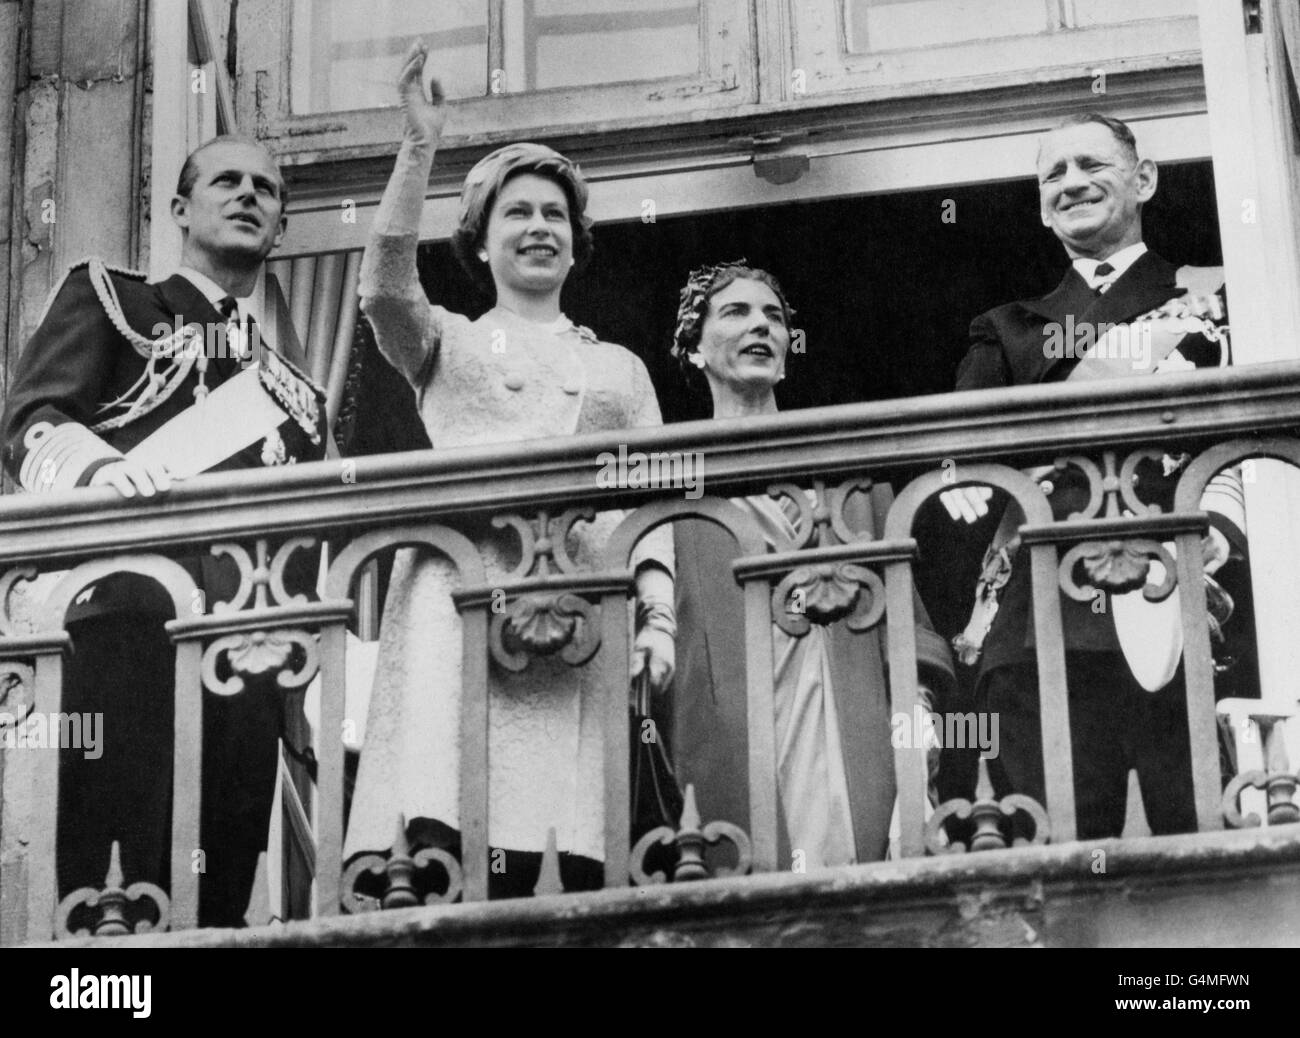 Royalty - Queen Elizabeth II State Visit to Denmark - Copenhagen Stock Photo